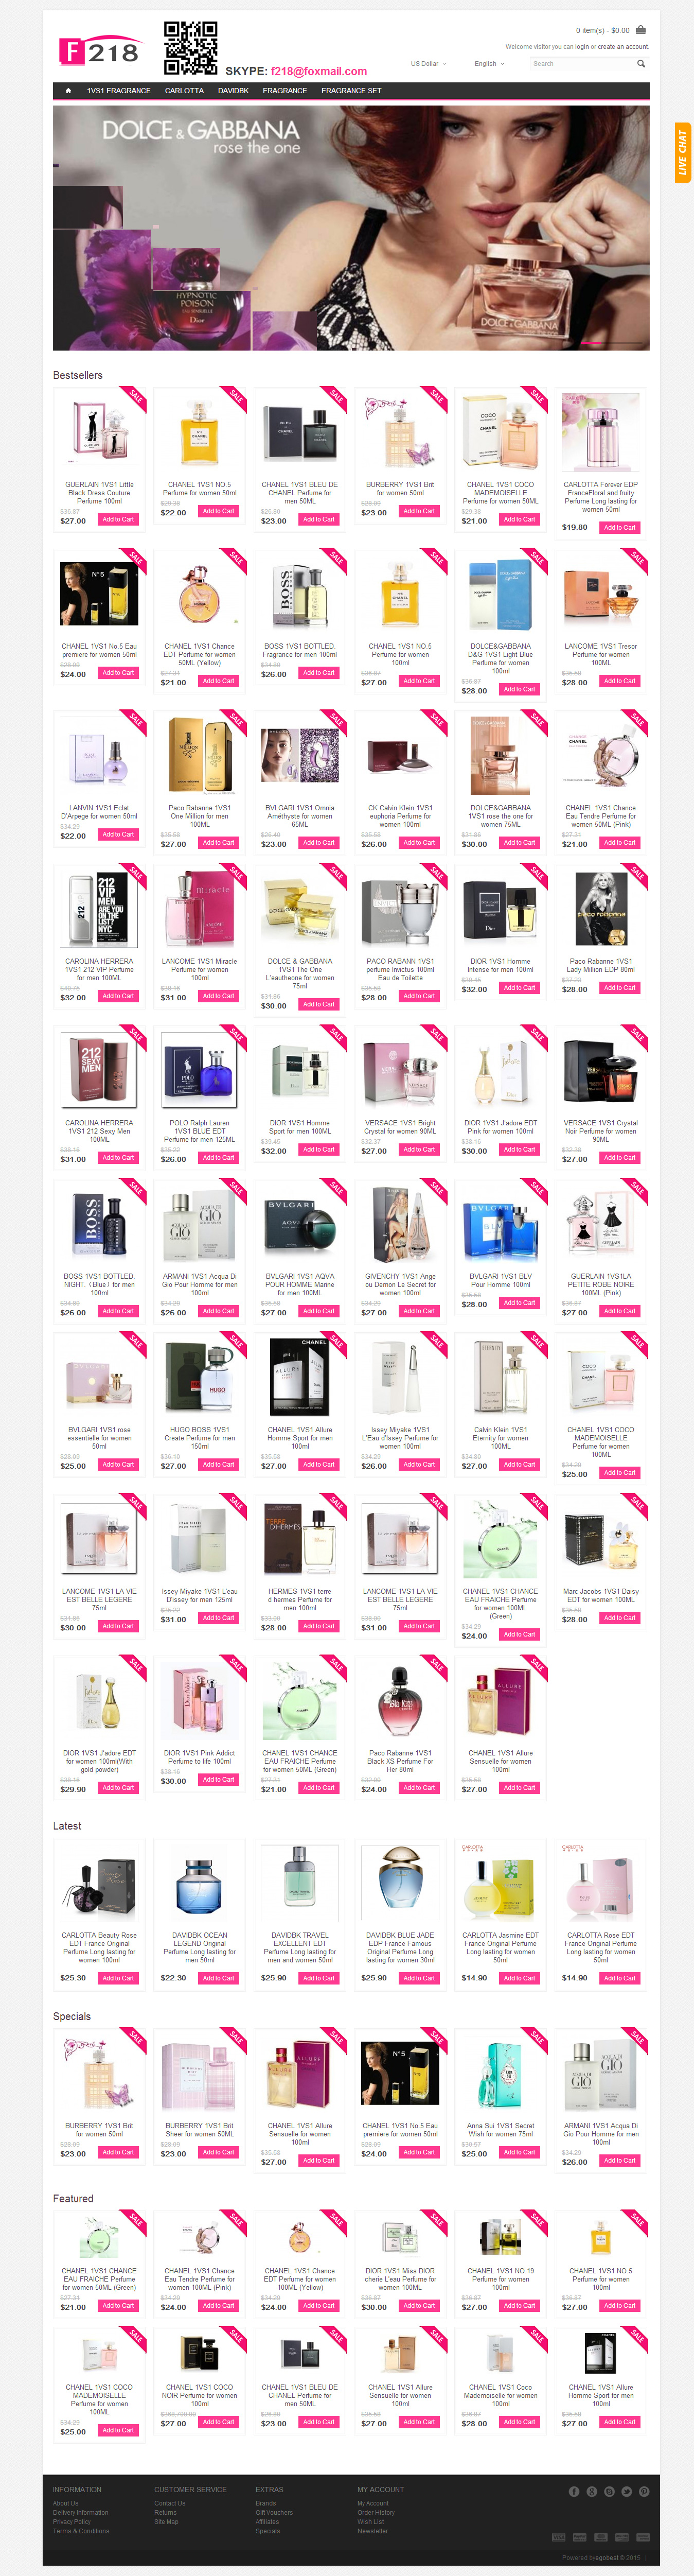 2015国际香水品牌化妆品外贸网站 B2C外贸商城